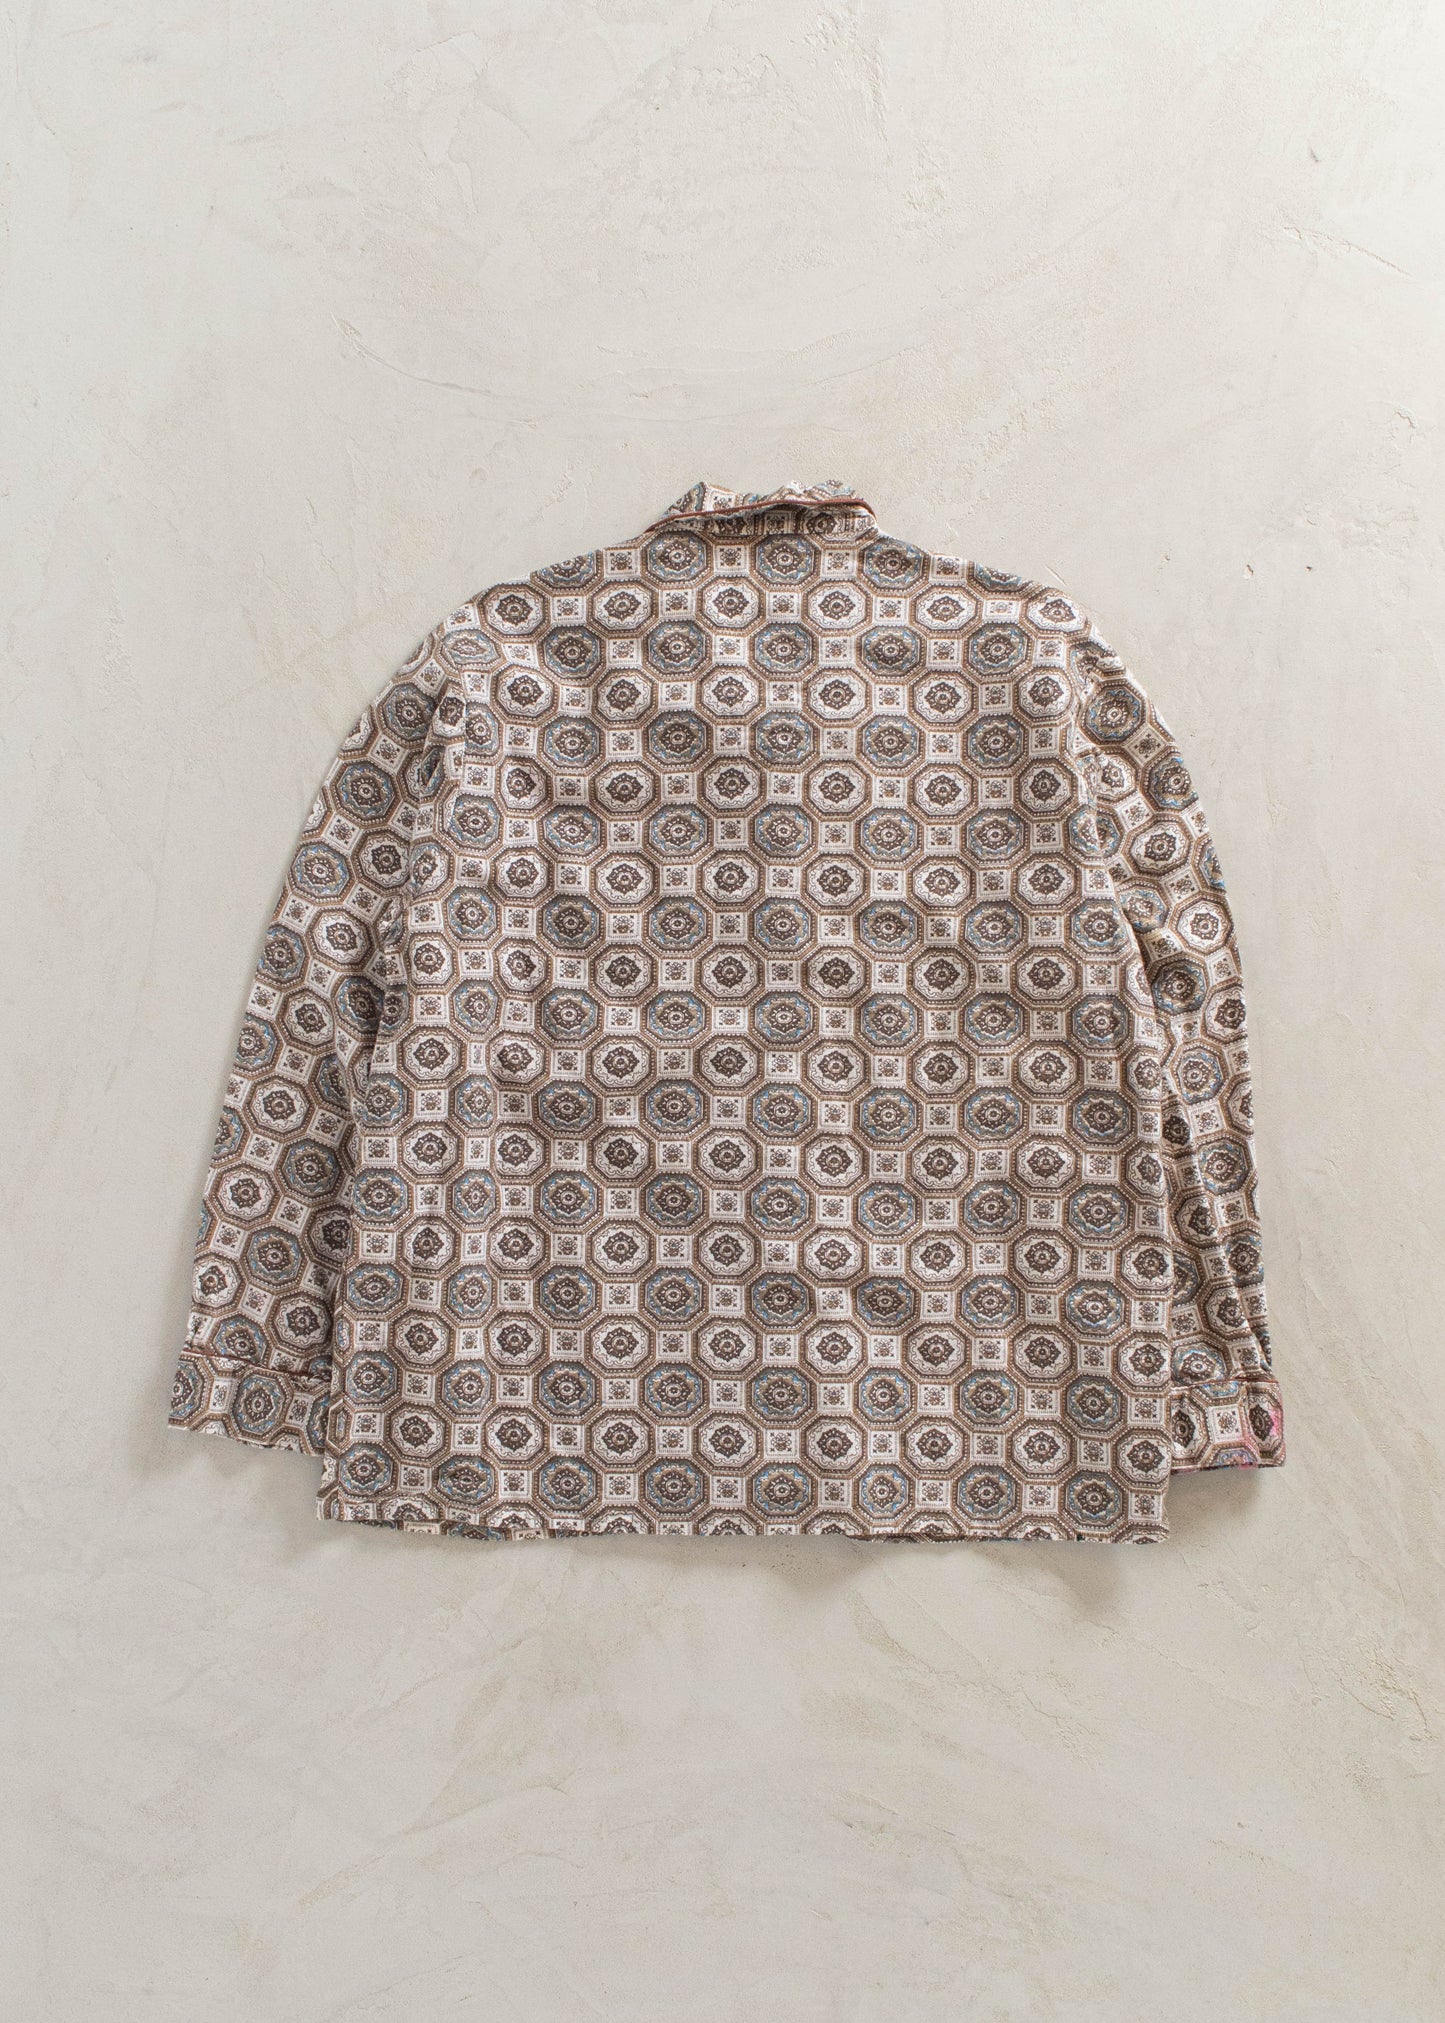 1970s Style-Wise Geometric Pattern Pajama Set Size M/L